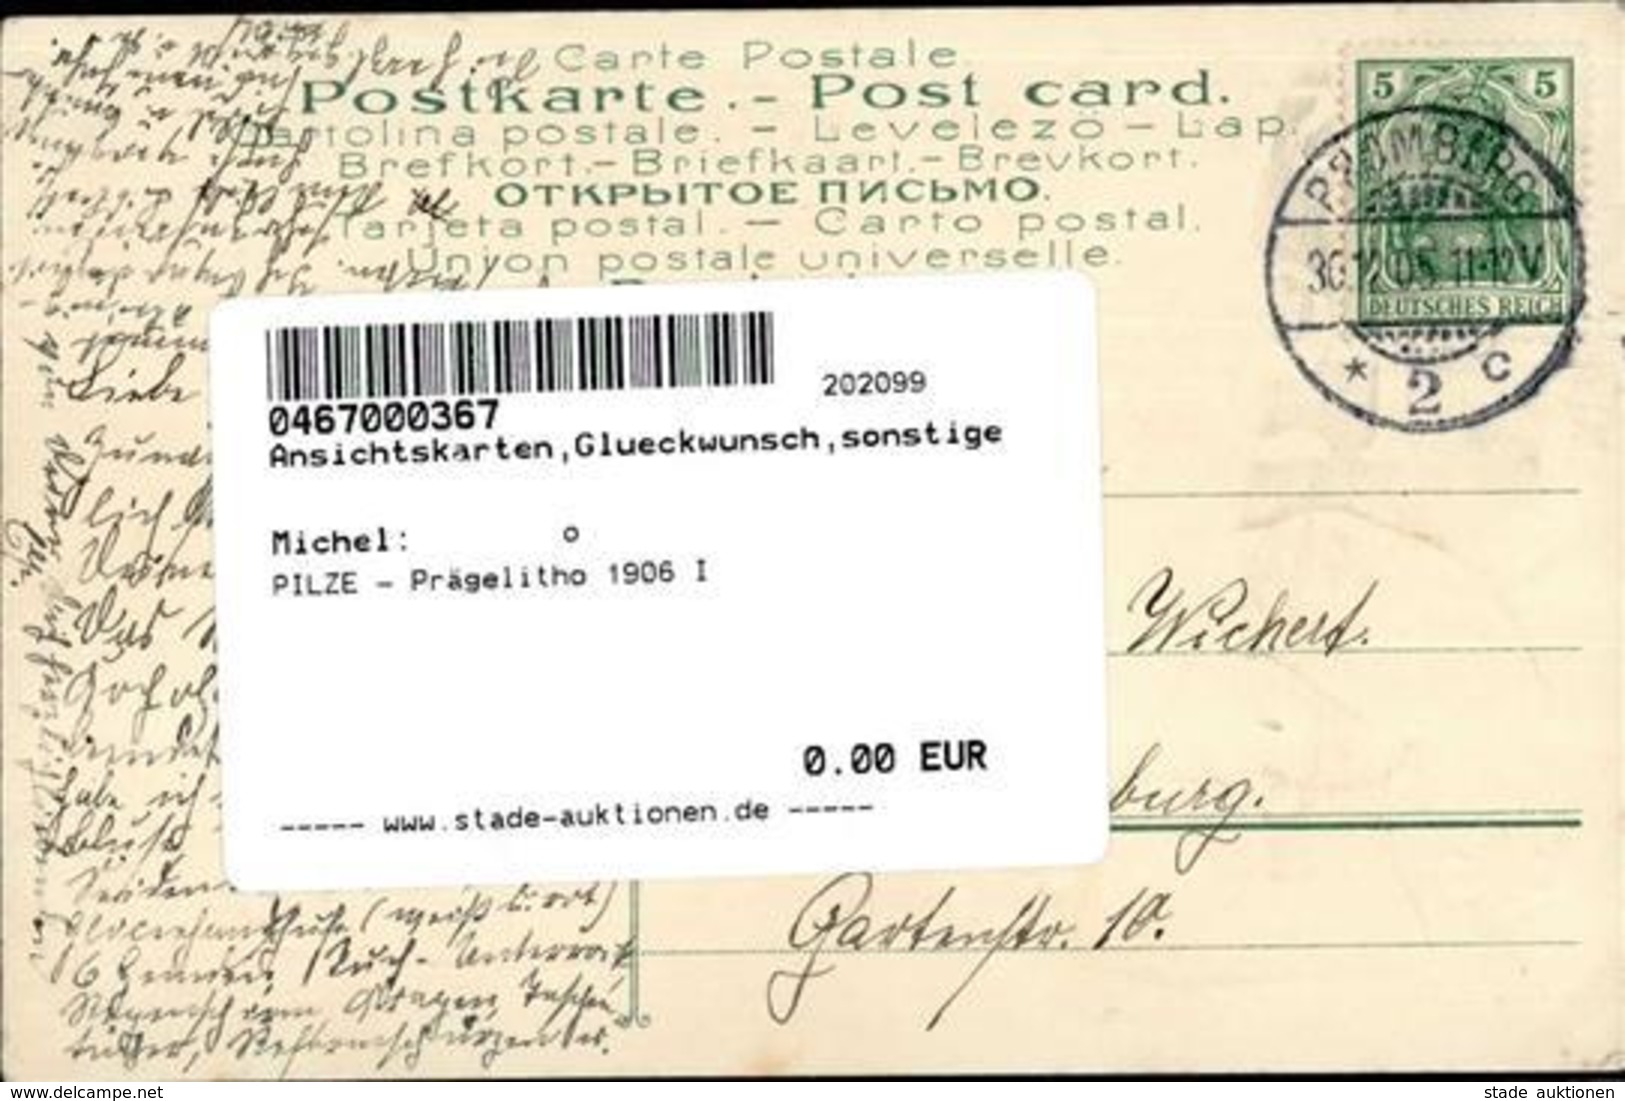 PILZE - Prägelitho 1906 I - Baumgarten, F.